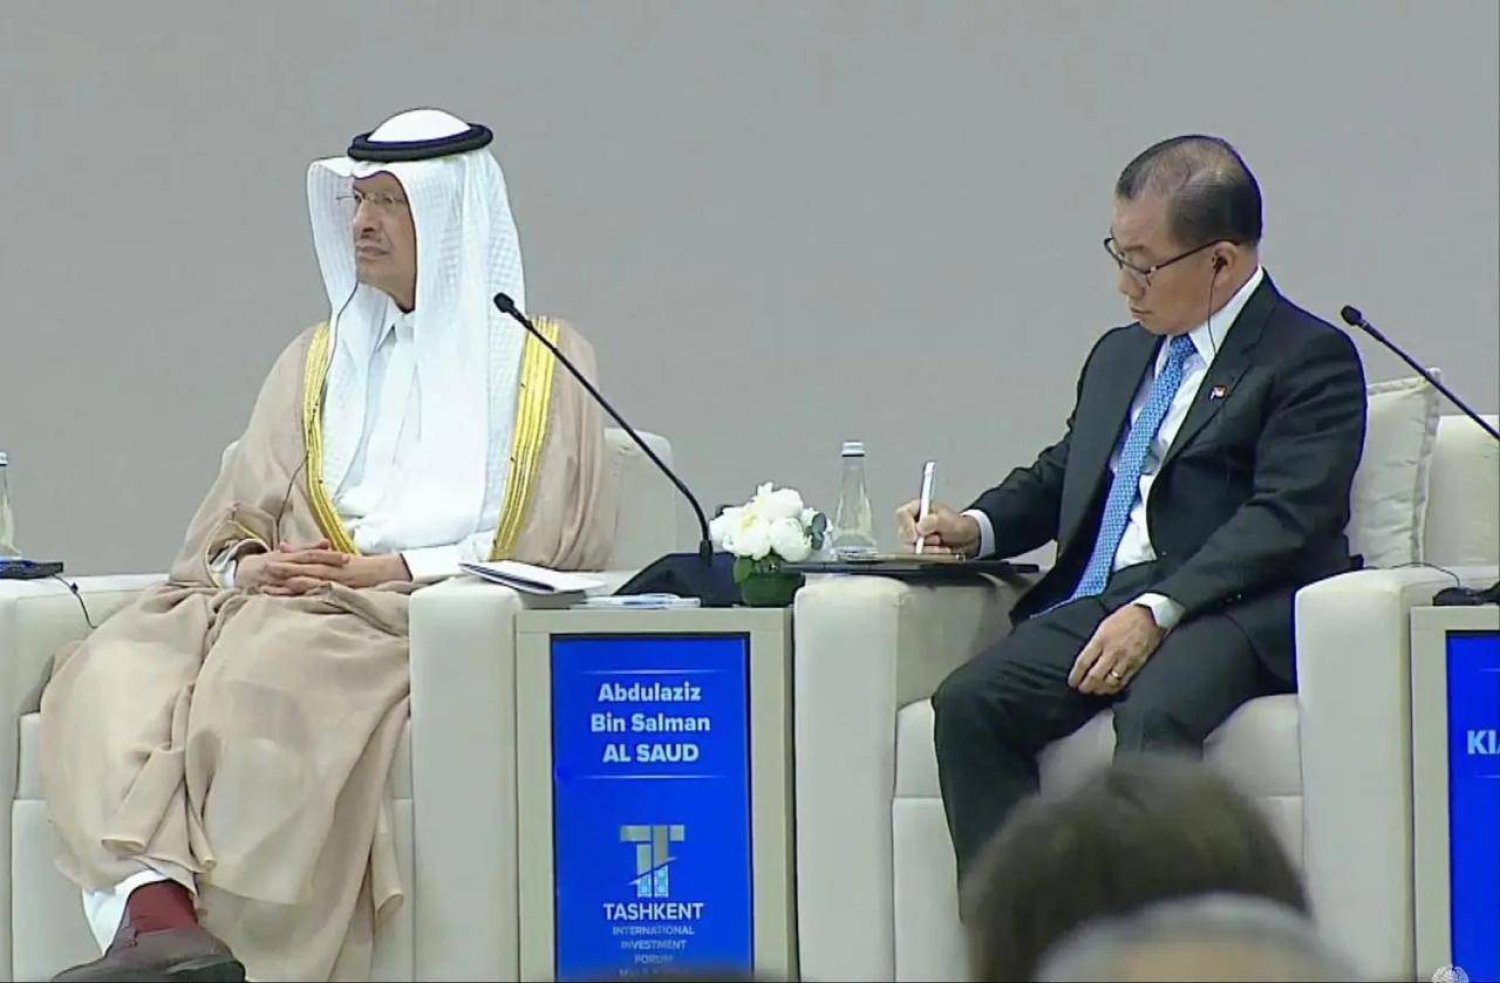 وزير الطاقة السعودي يشارك في الجلسة الحوارية الرئيسية في منتدى طشقند الدولي الثالث للاستثمار (واس)